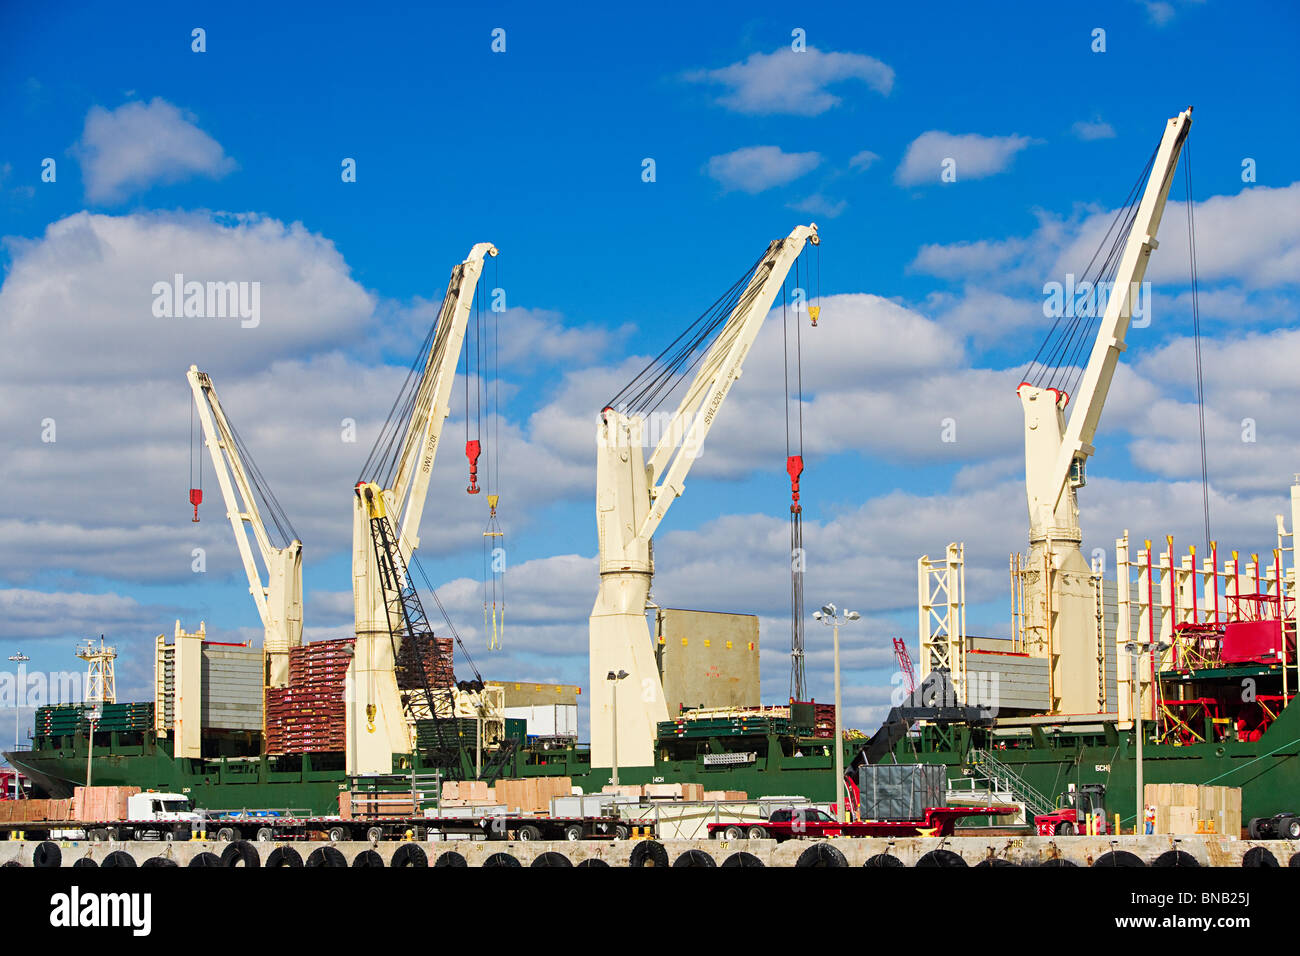 Row of cranes Stock Photo